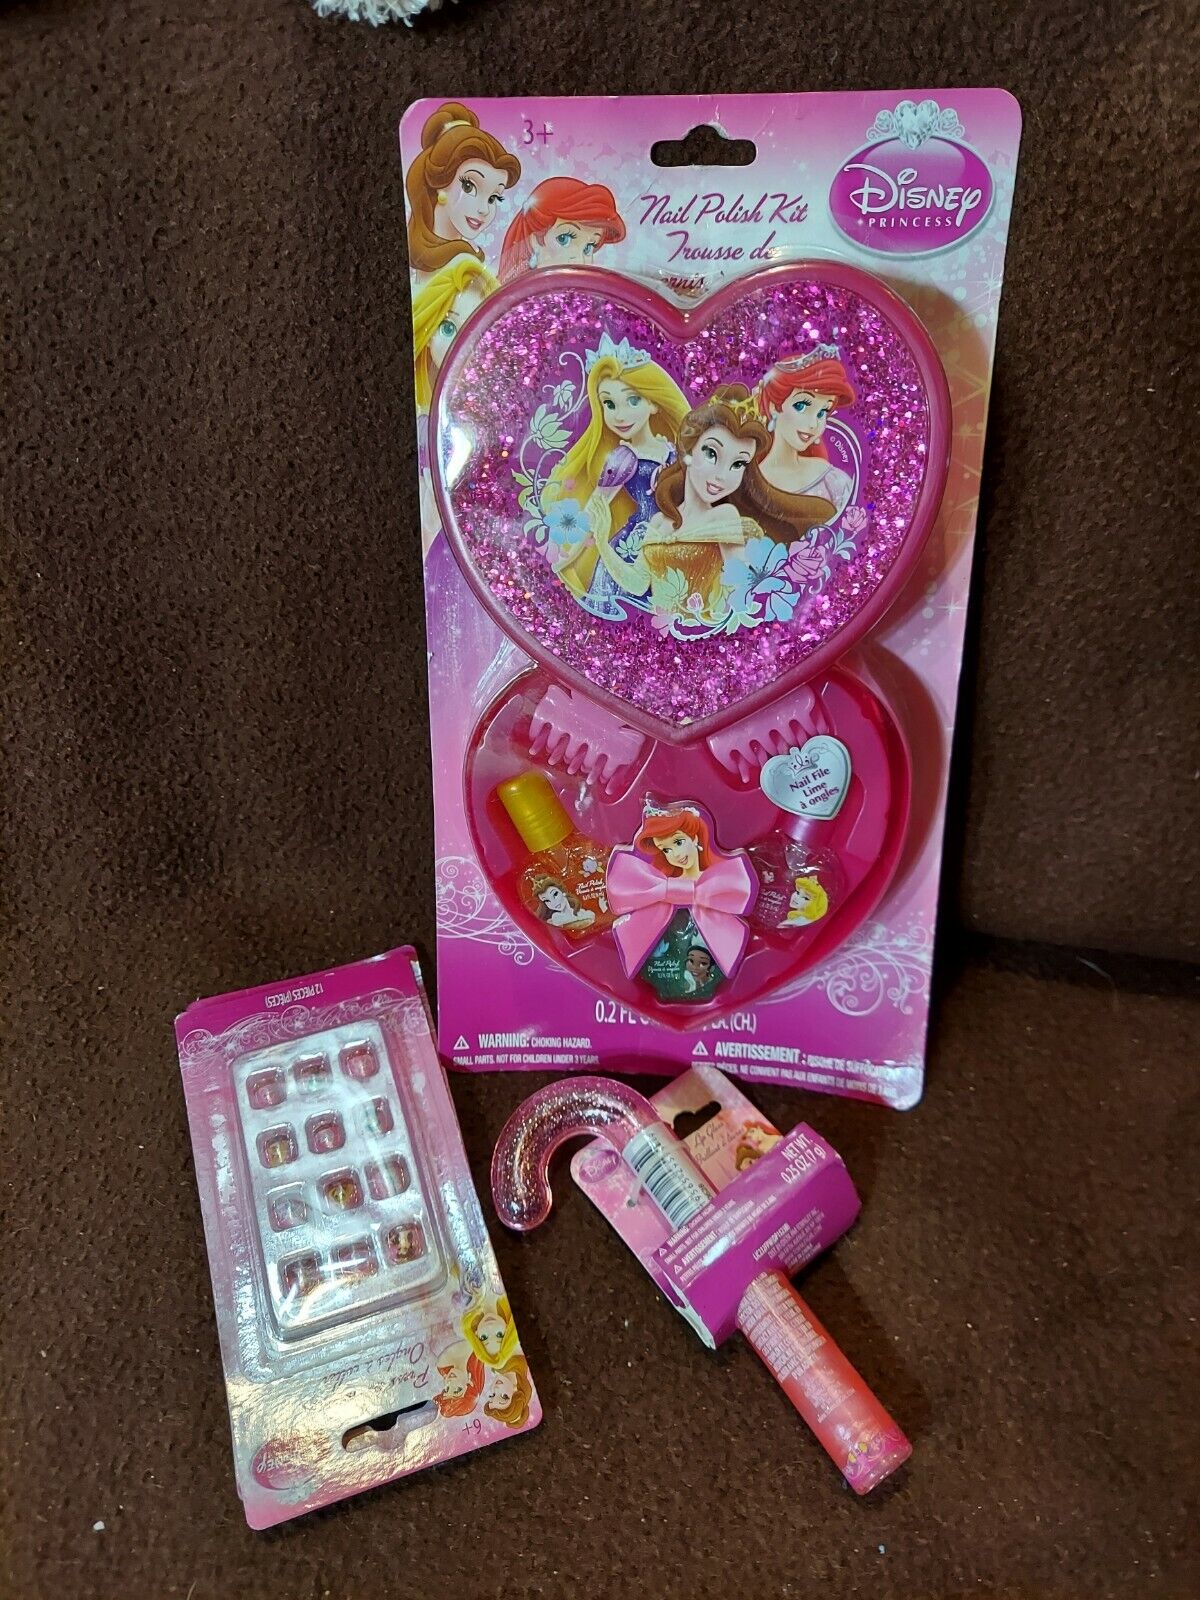 Disney Princess Press on Nails Sales results No. 1 Cane Kit Gloss Nail Polish Lip Bombing new work